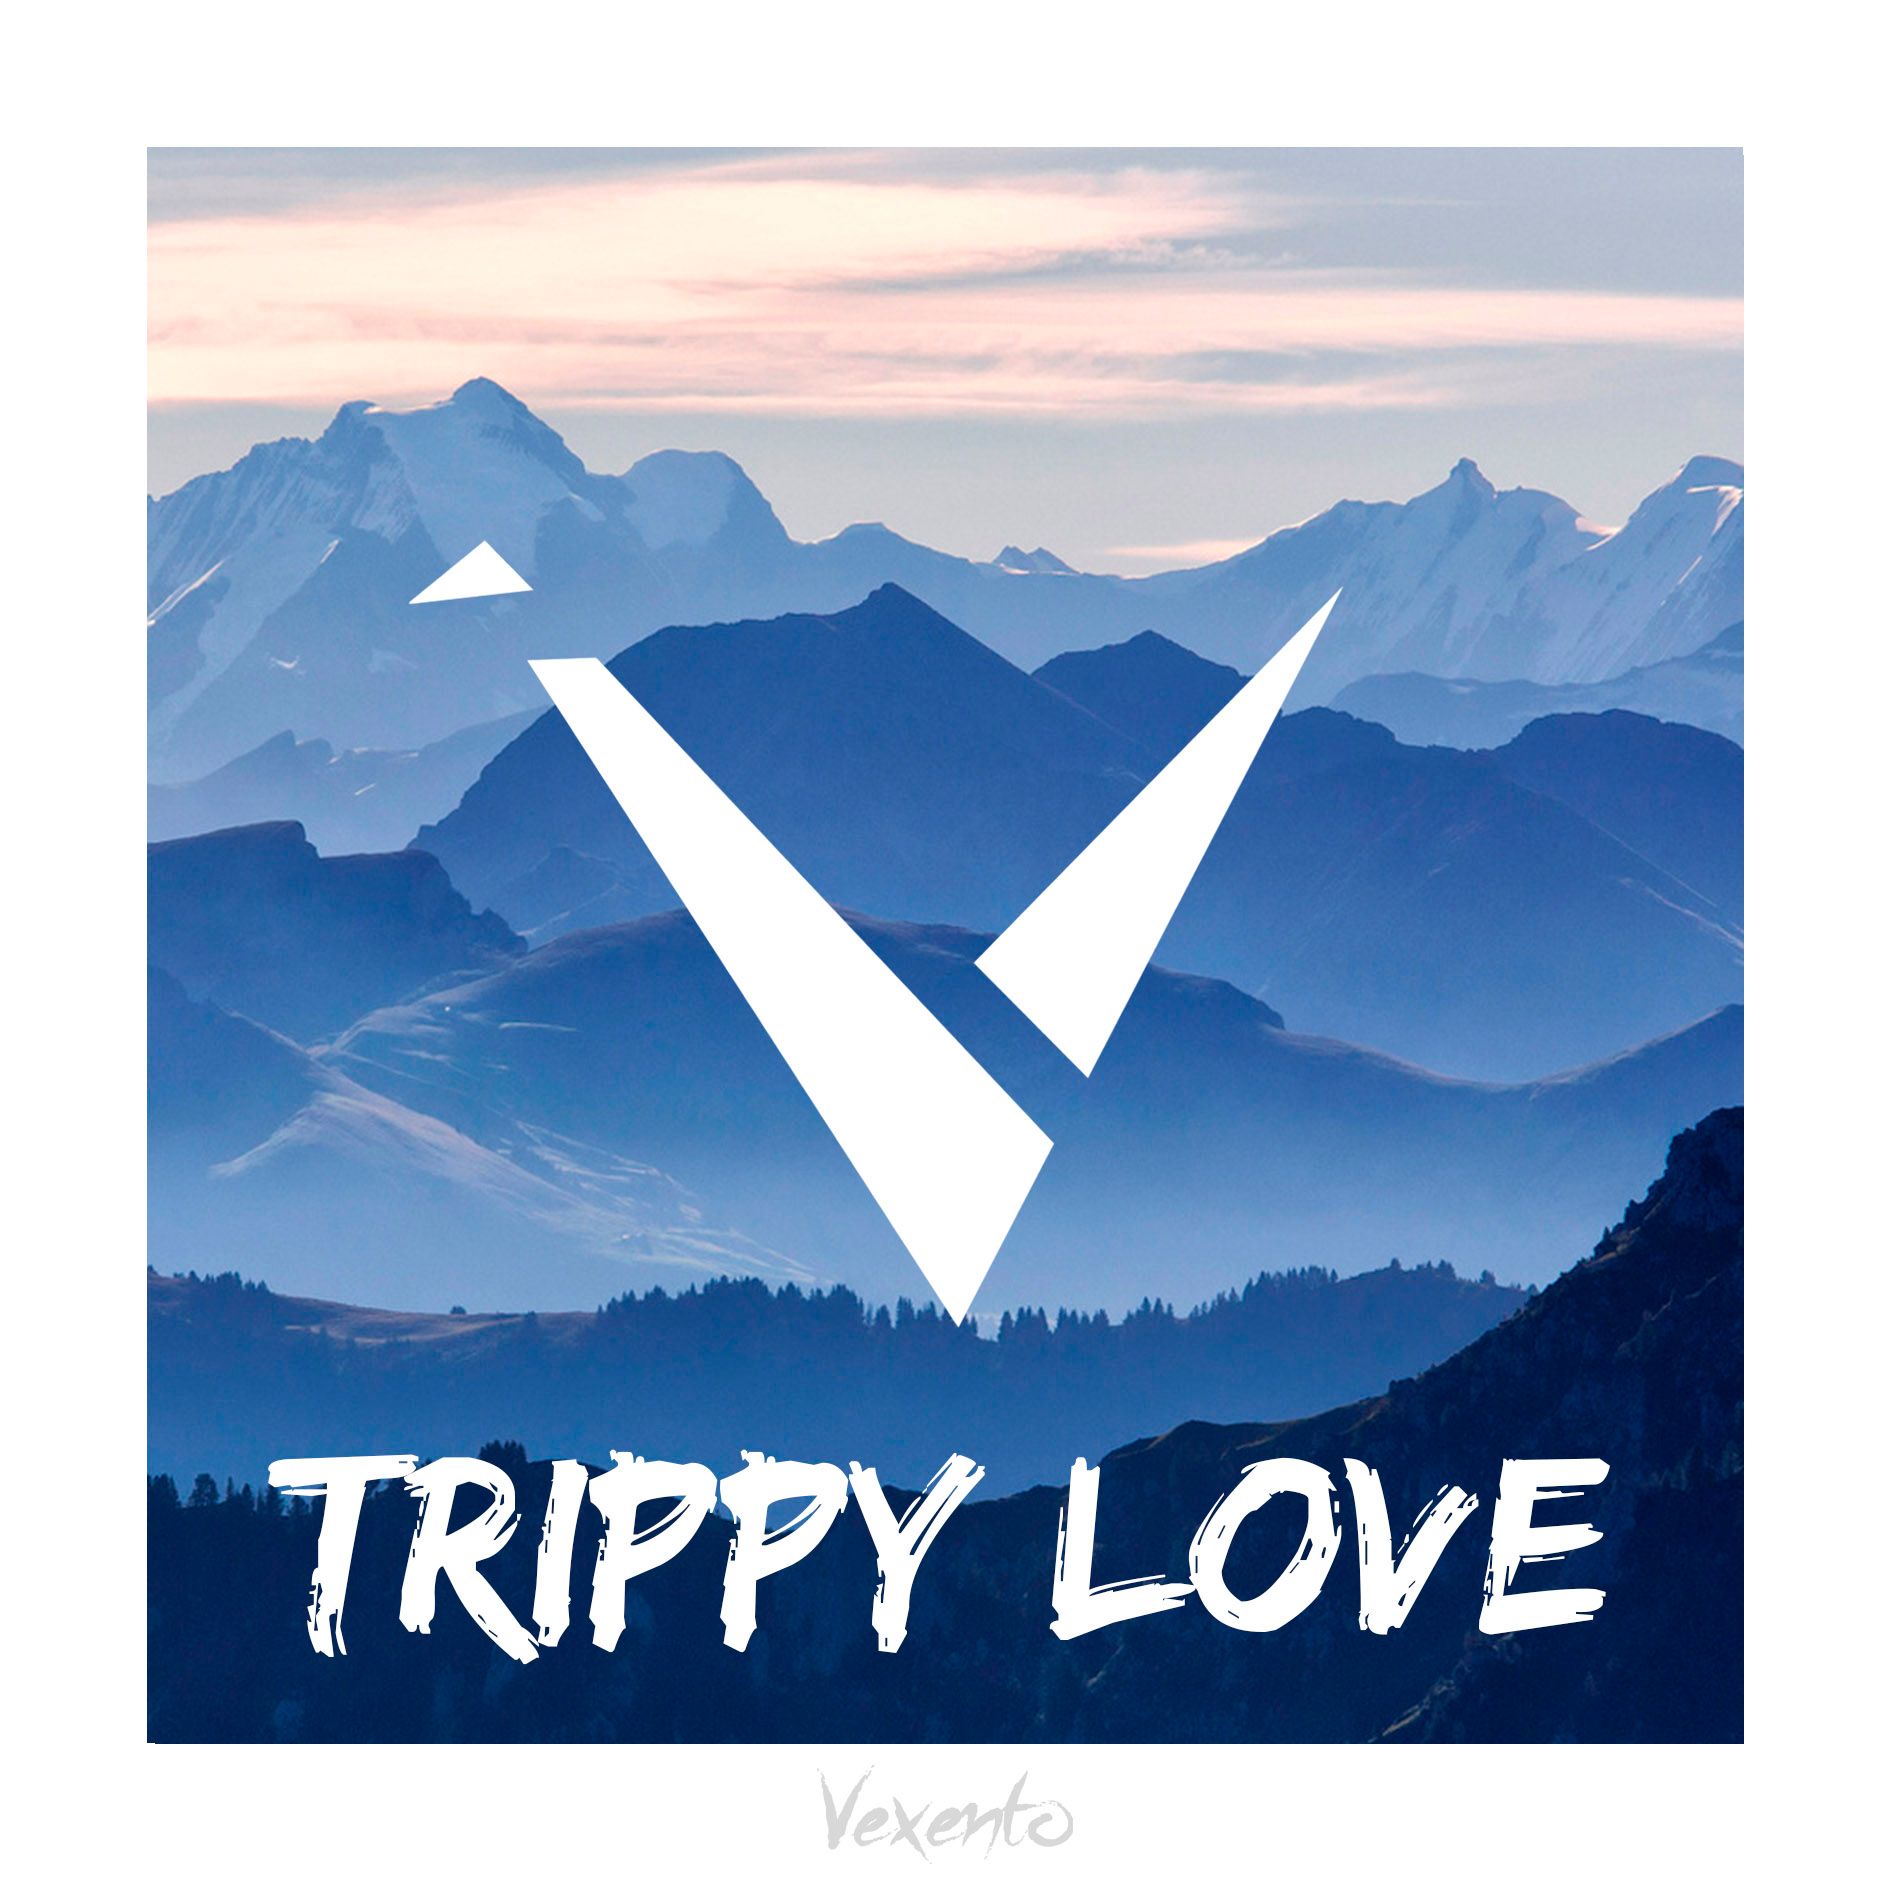 Descargar Vexento - Trippy Love